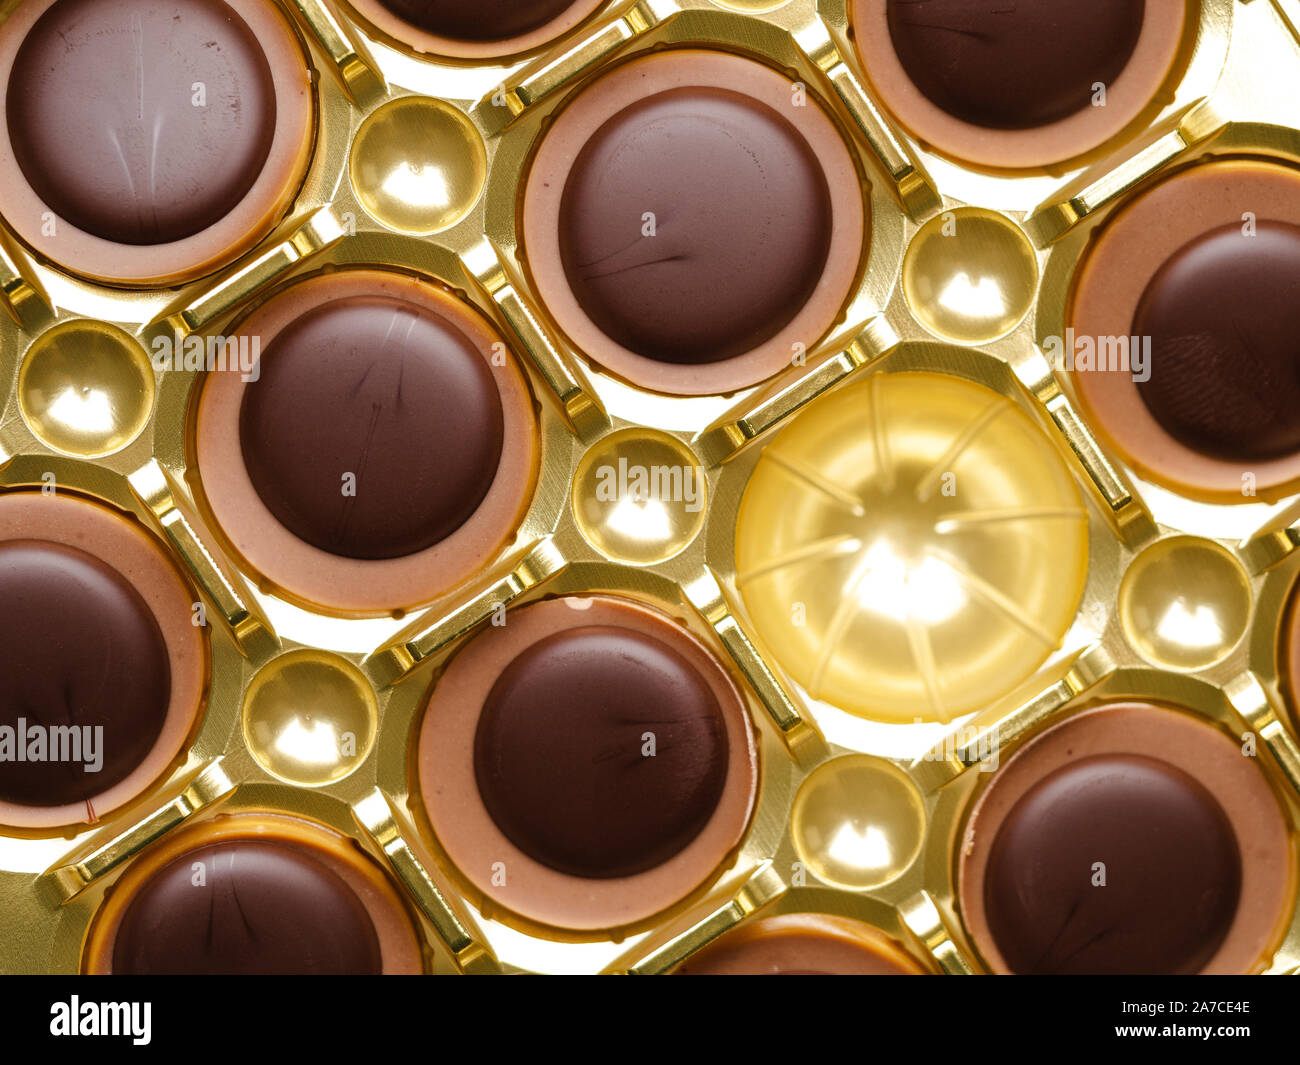 Cioccolatini con uno mancante in una scatola dorata, vista dall'alto Foto Stock